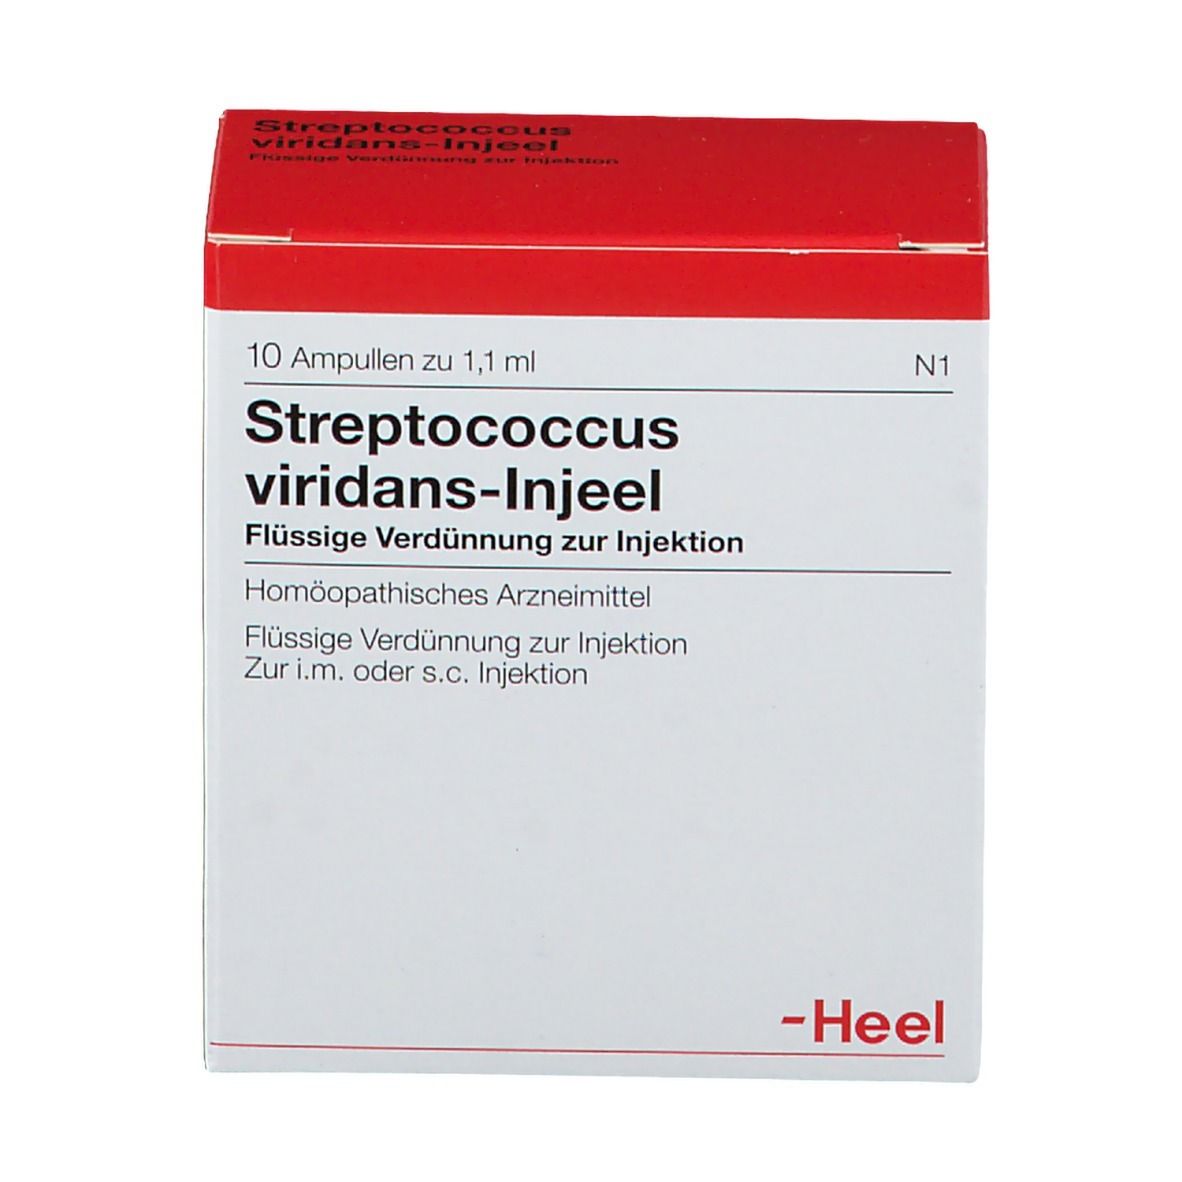 Streptococcus viridans Injeel® Ampullen